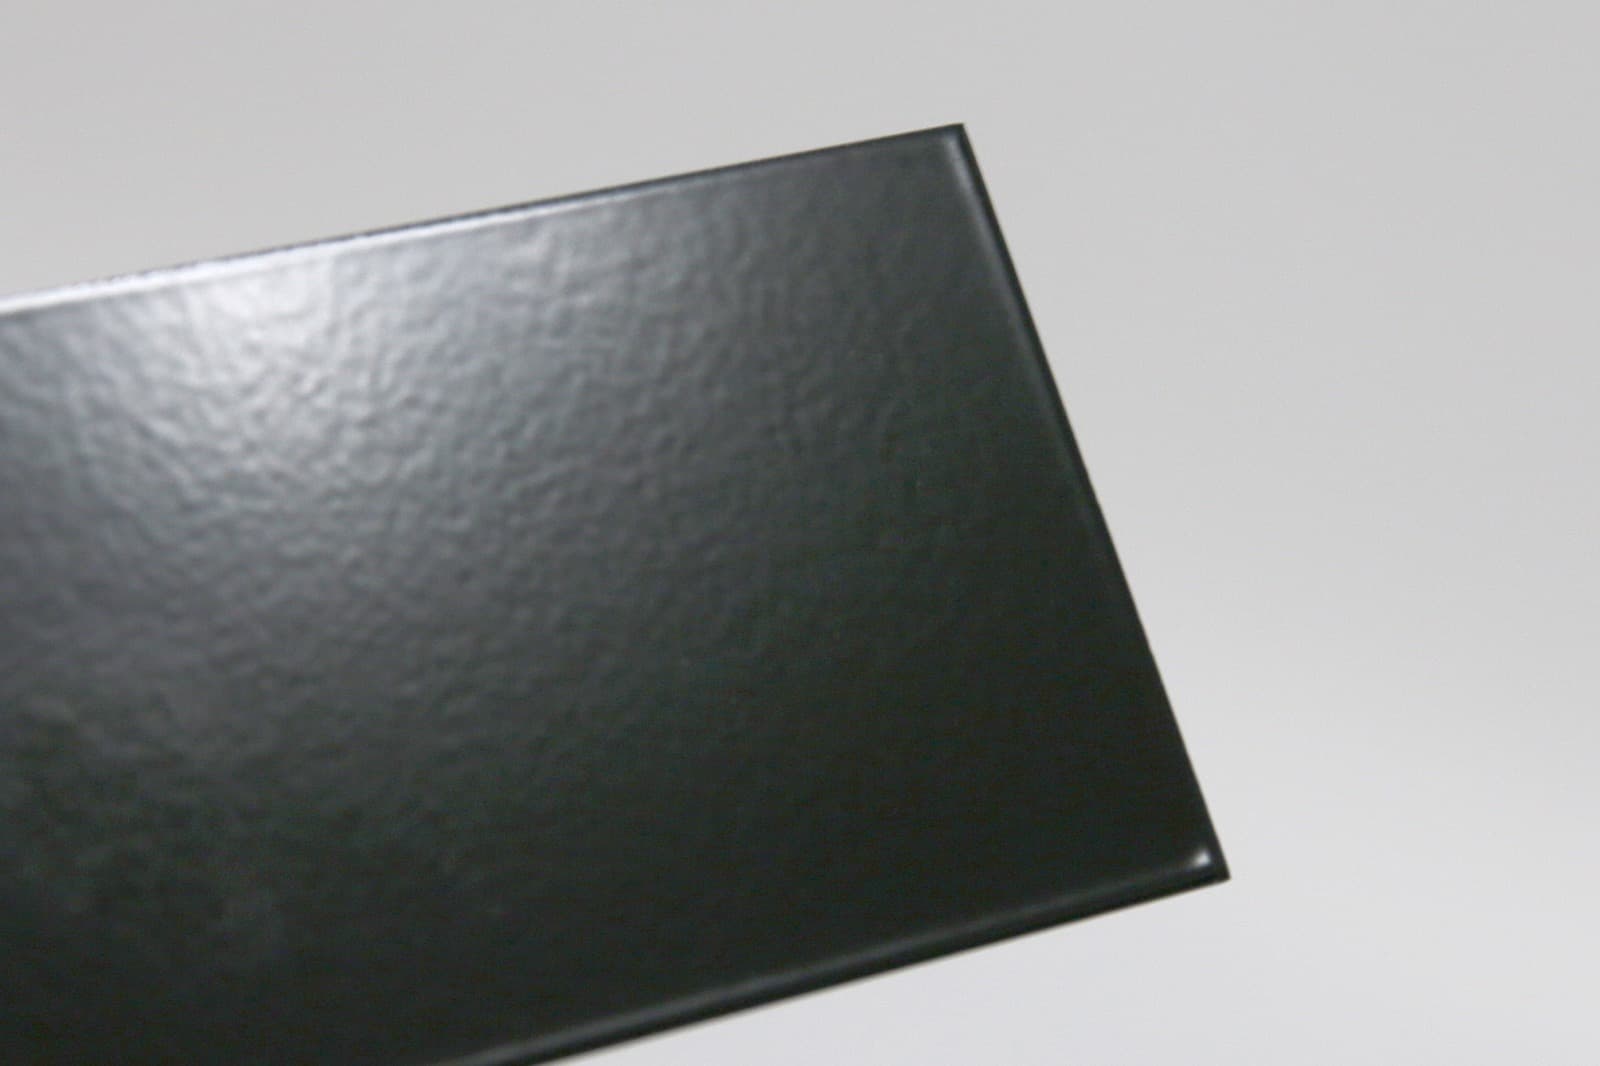 キューブ型レンジフード 照明なし W600×H400 ブラック KB-KC019-04-G162 質感見本。ツヤがあります